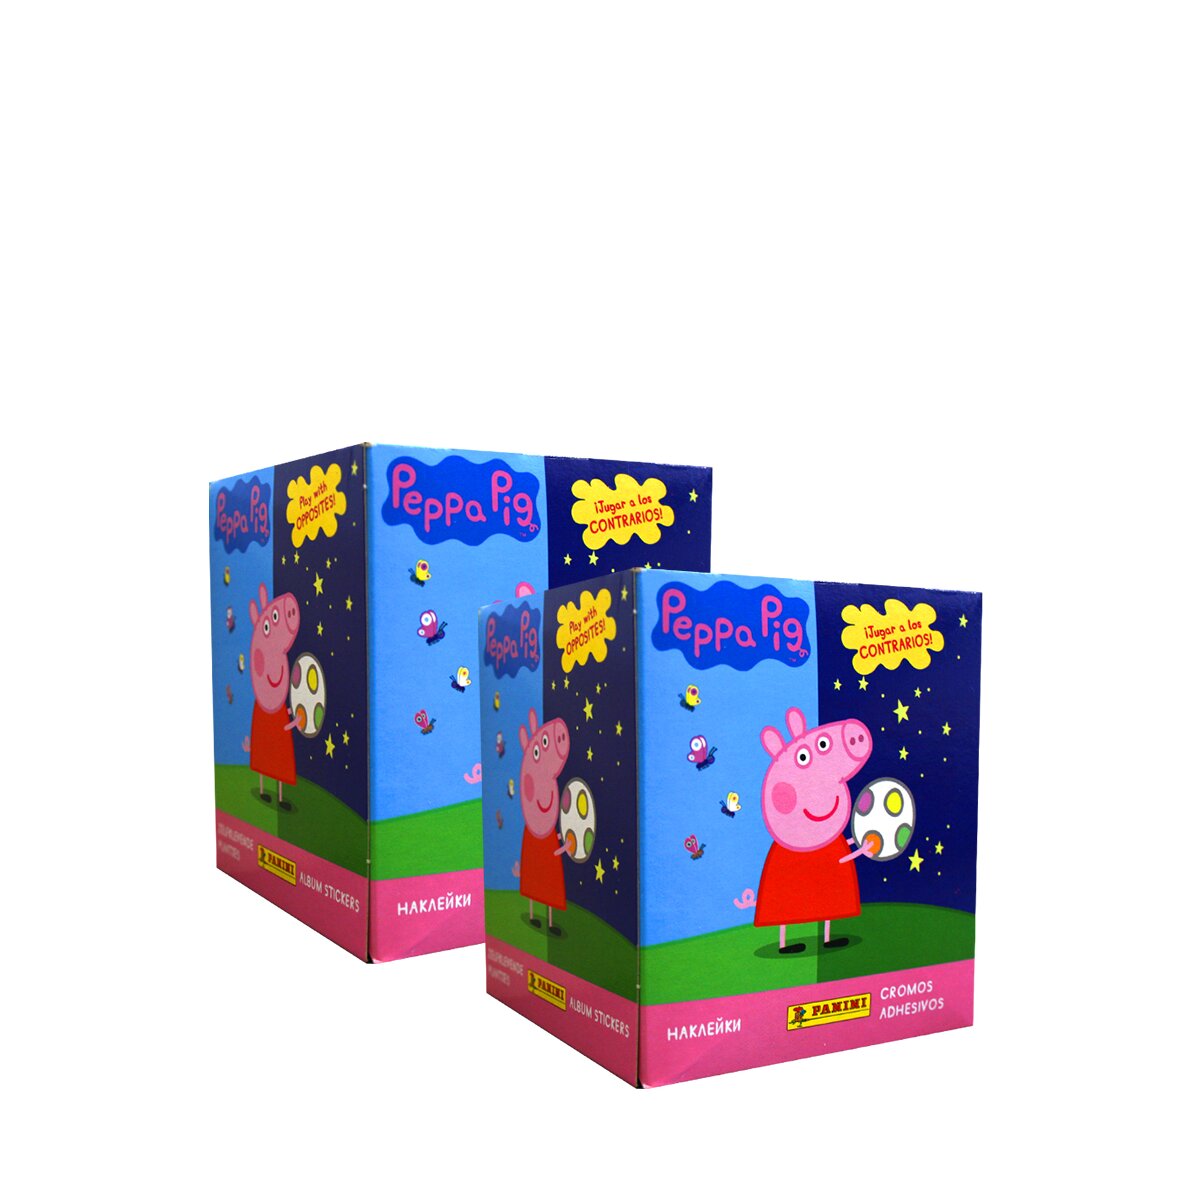 Panini Peppa Pig Wutz 2021 Spiele mit Gegensätzen Sticker Display Album Tüten